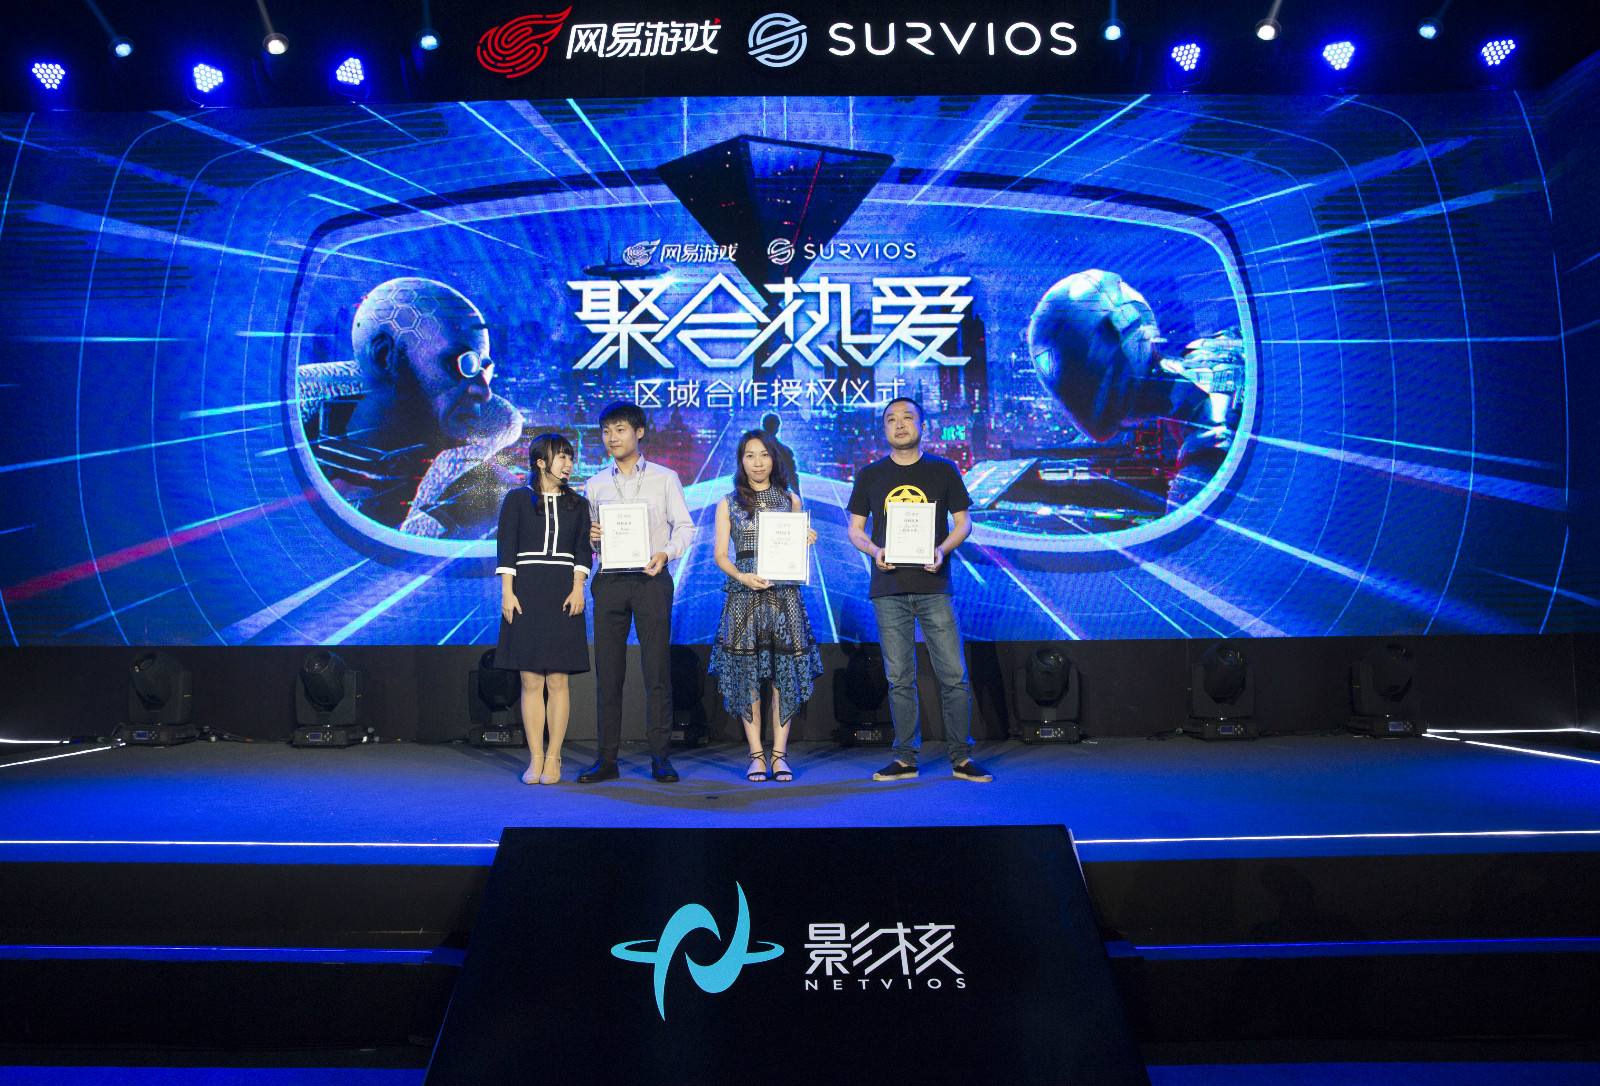 聚合热爱 影核中国 网易游戏布局VR市场